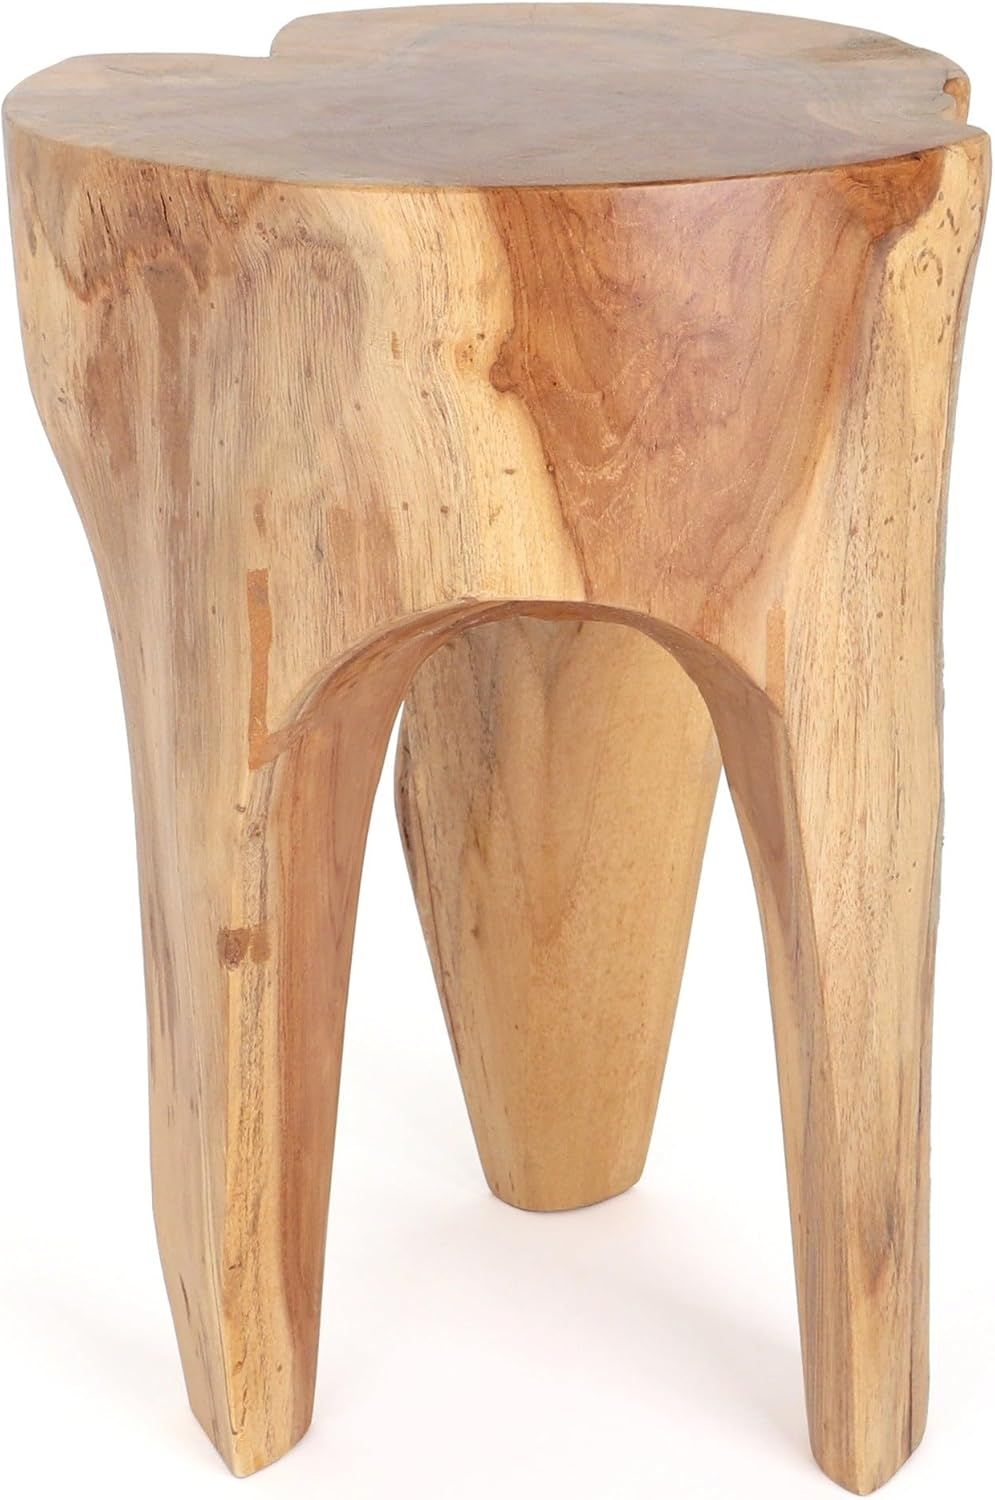 Rutledge & King Java Teak Root Stool - Wooden Stool - Teak Boho Side Table - Teak Accent Table - ... | Amazon (US)